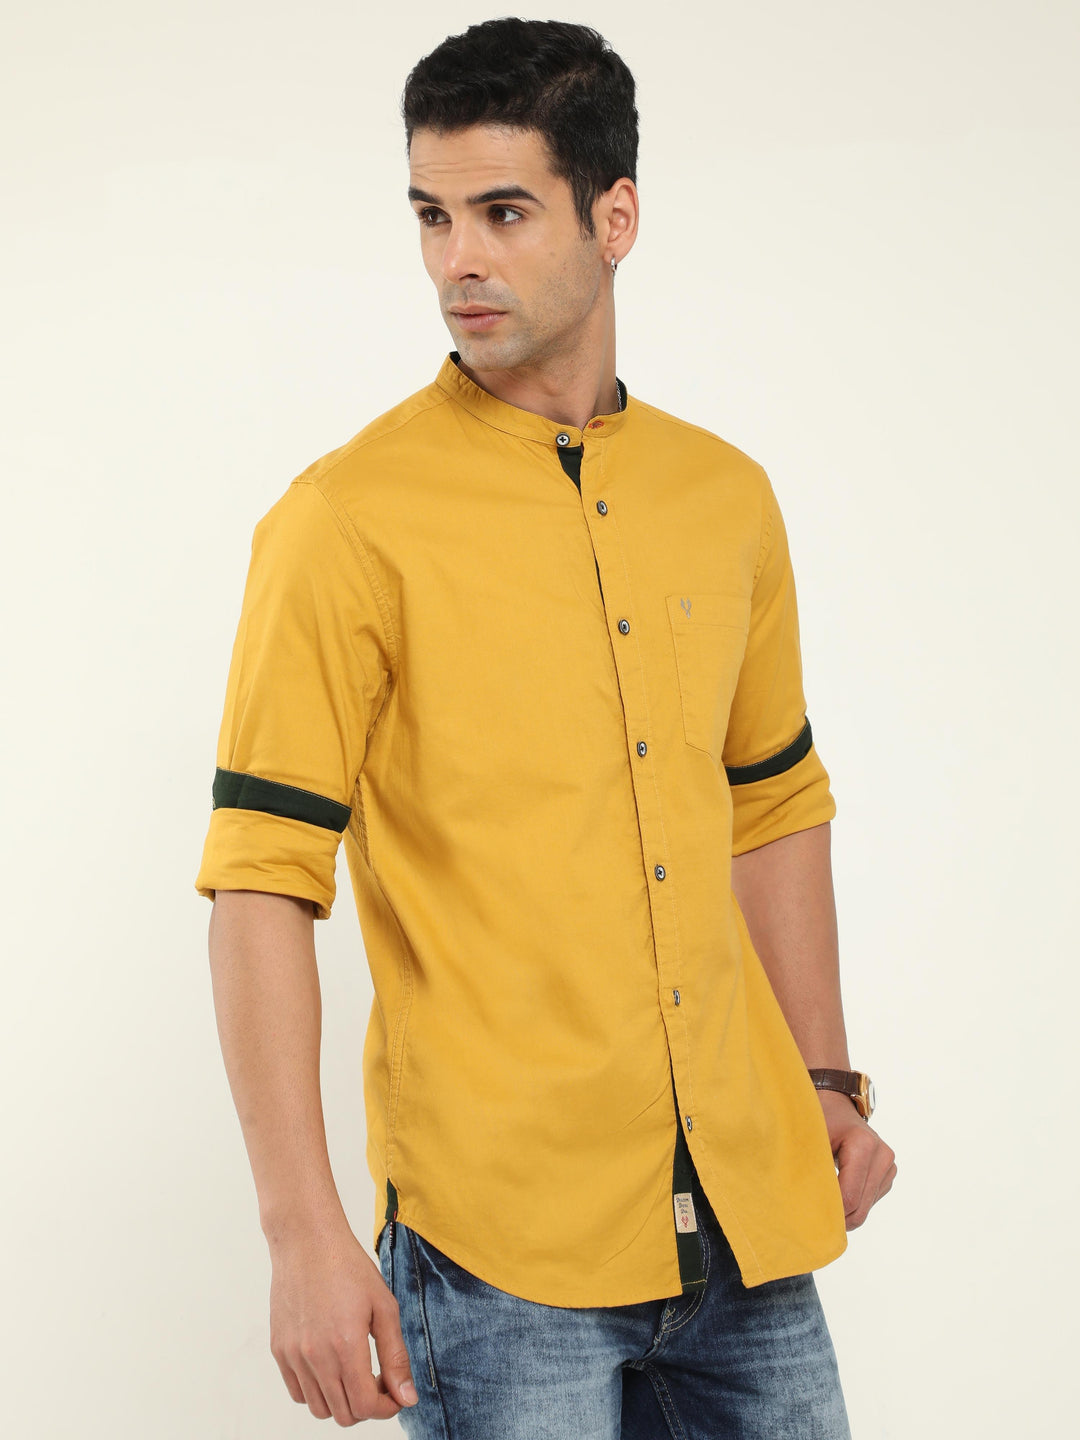 Classic Mustard Mandarin Collar Shirt